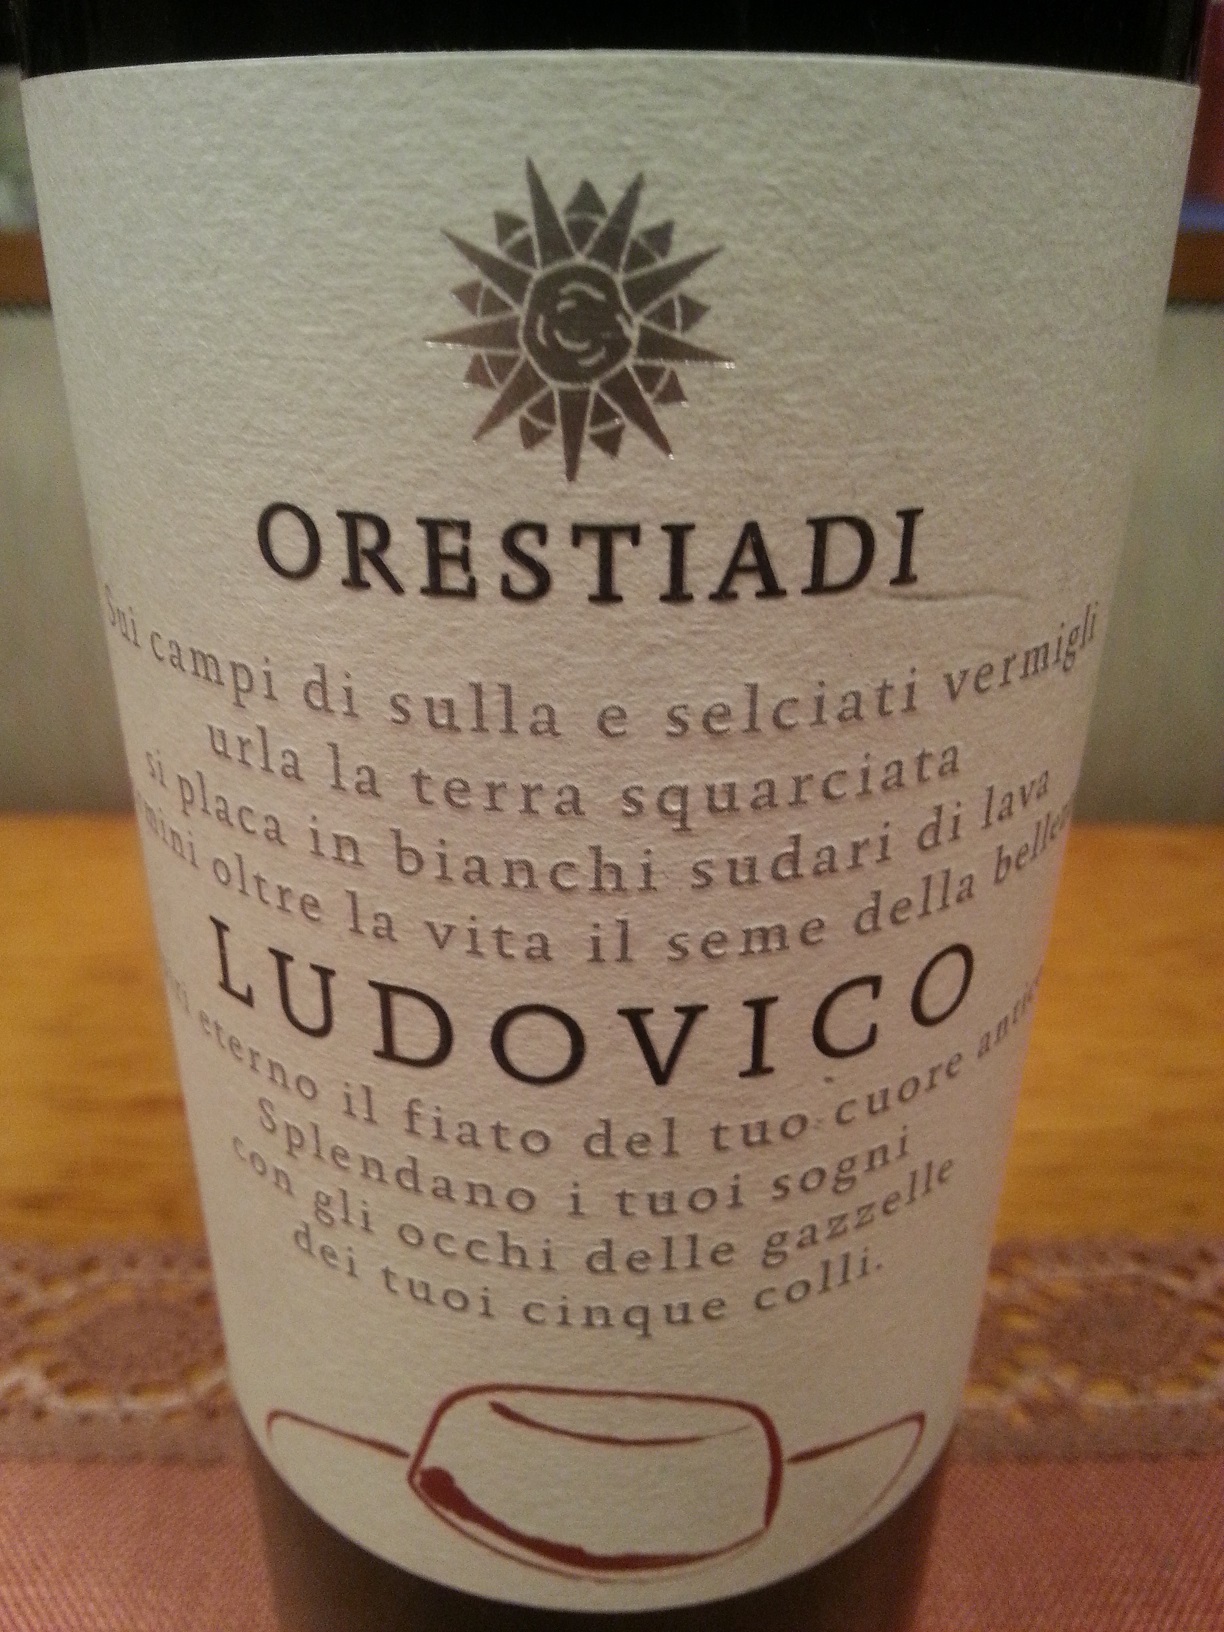 2008 Ludovico | Orestiadi